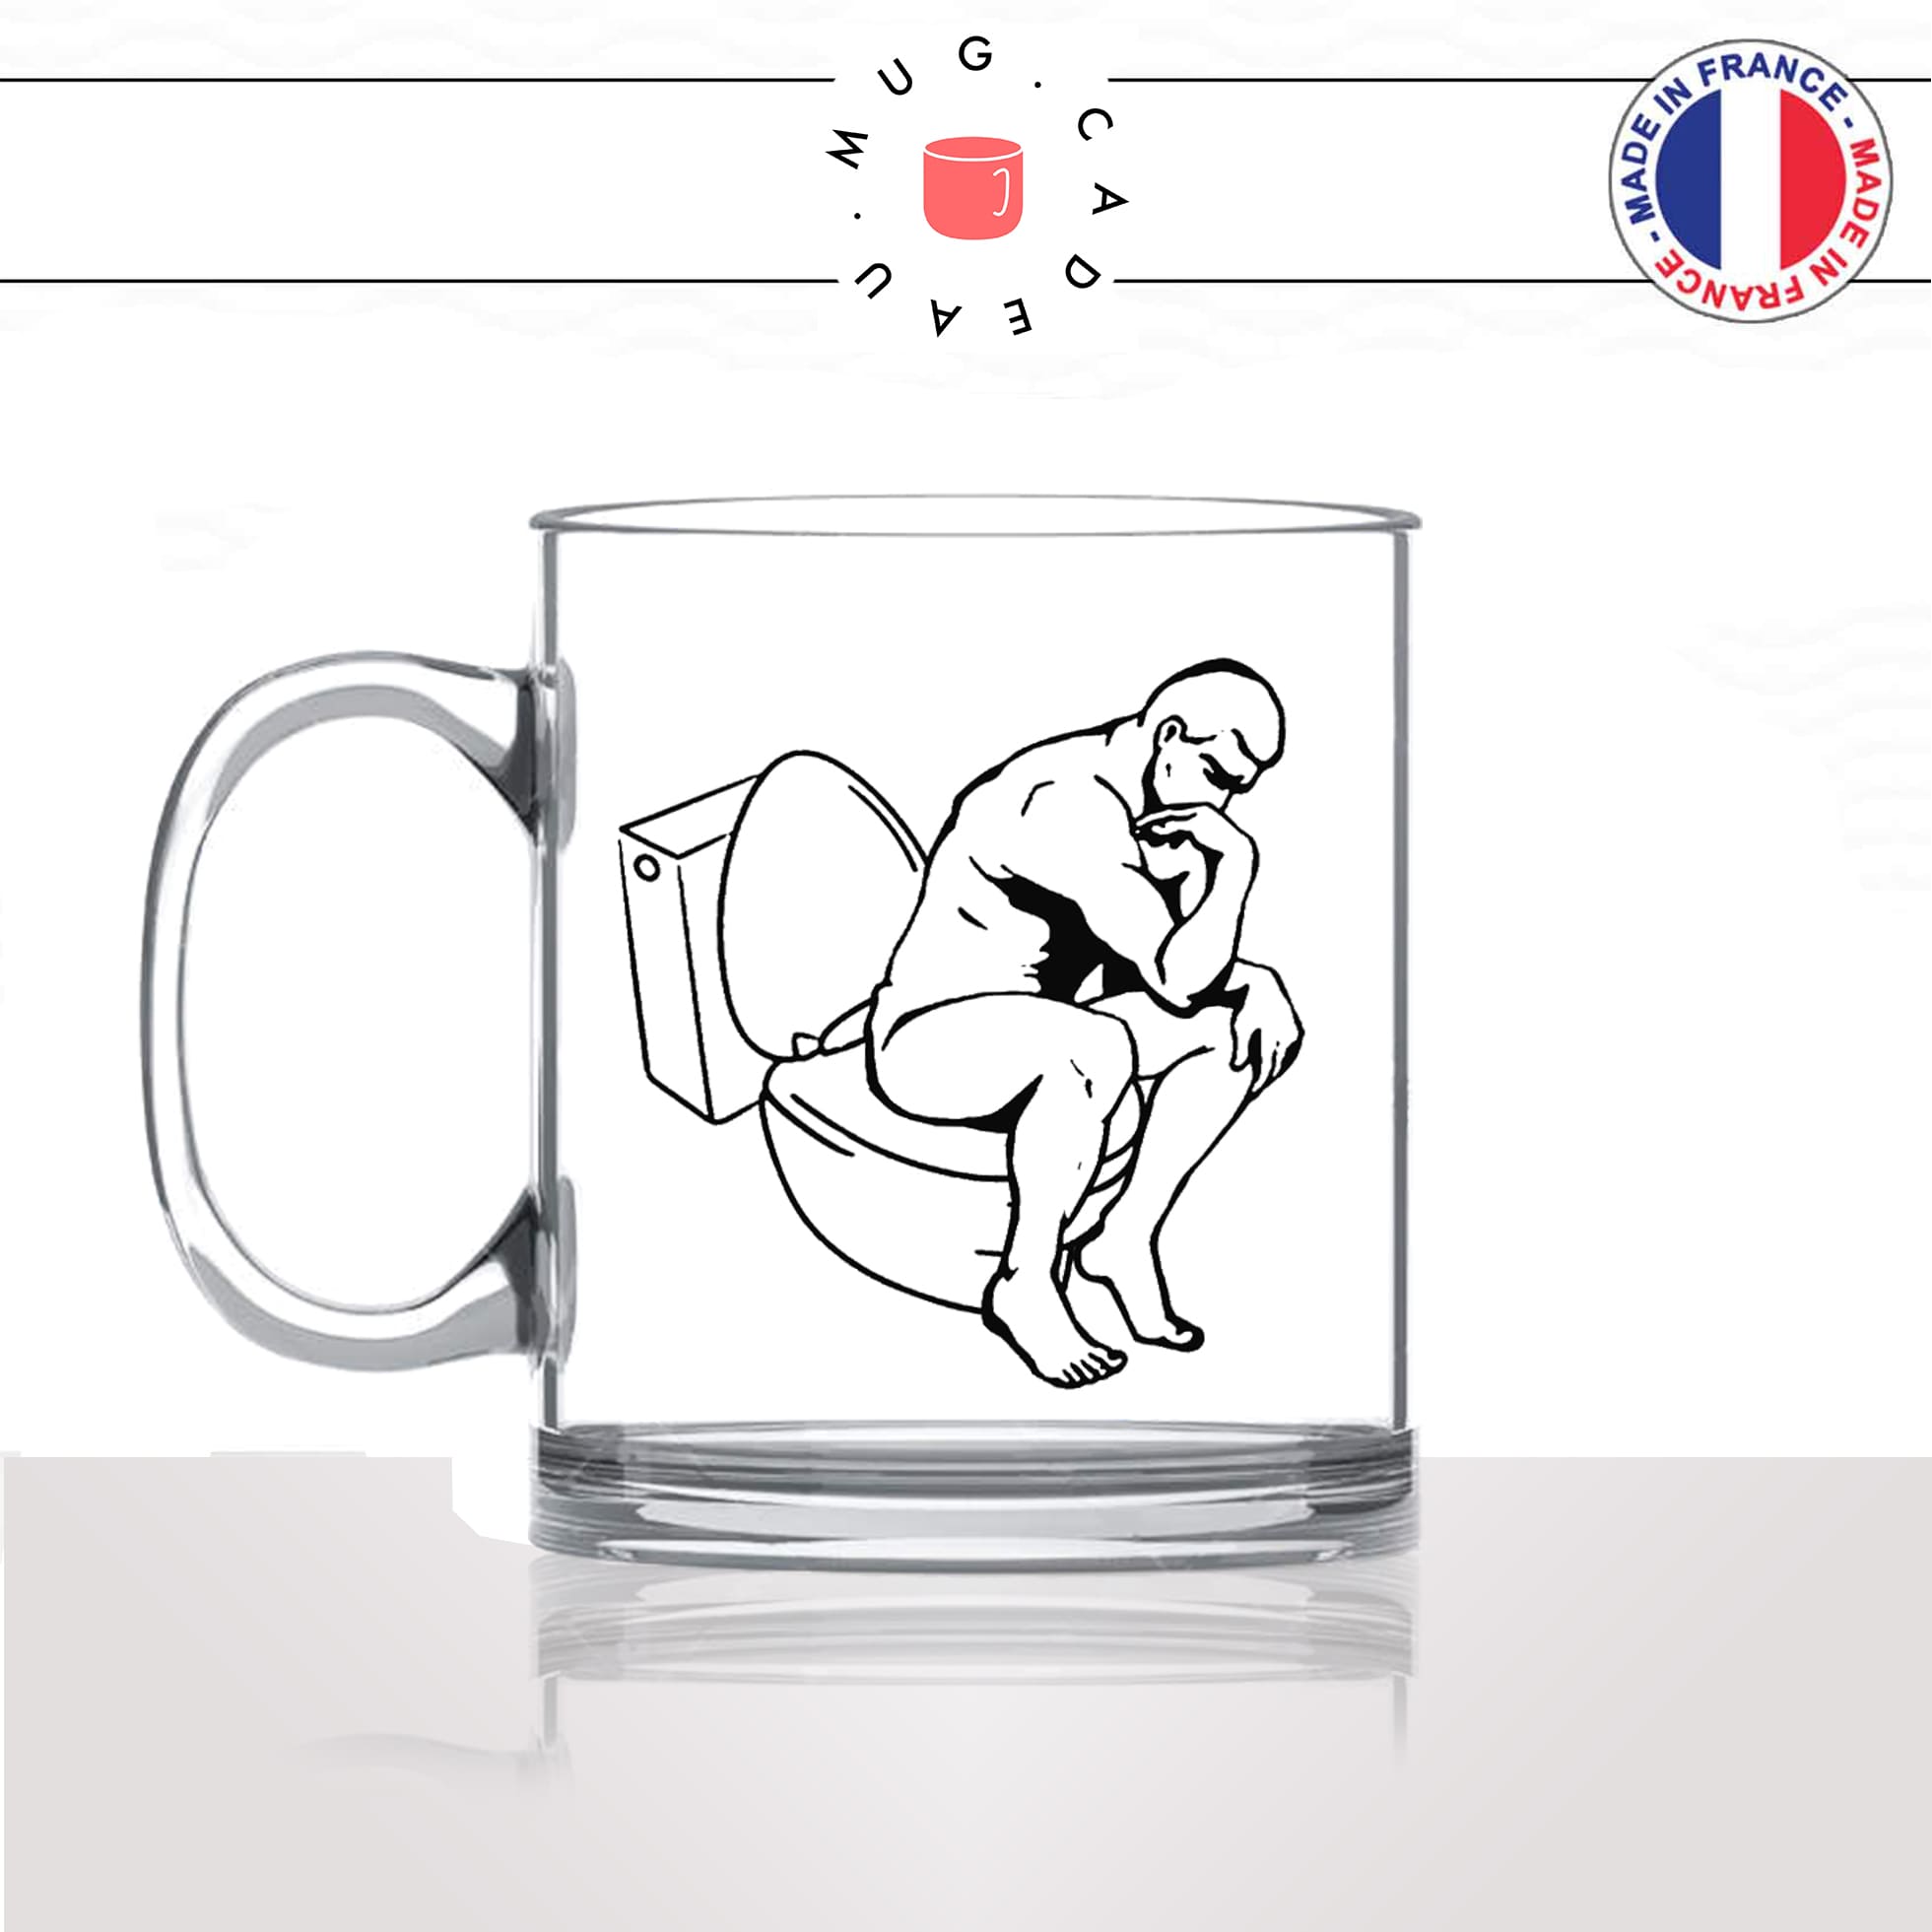 mug-tasse-en-verre-transparent-glass-le-penseur-de-rodin-aux-toilettes-sculpture-art-parodie-homme-humour-fun-idée-cadeau-originale-cool